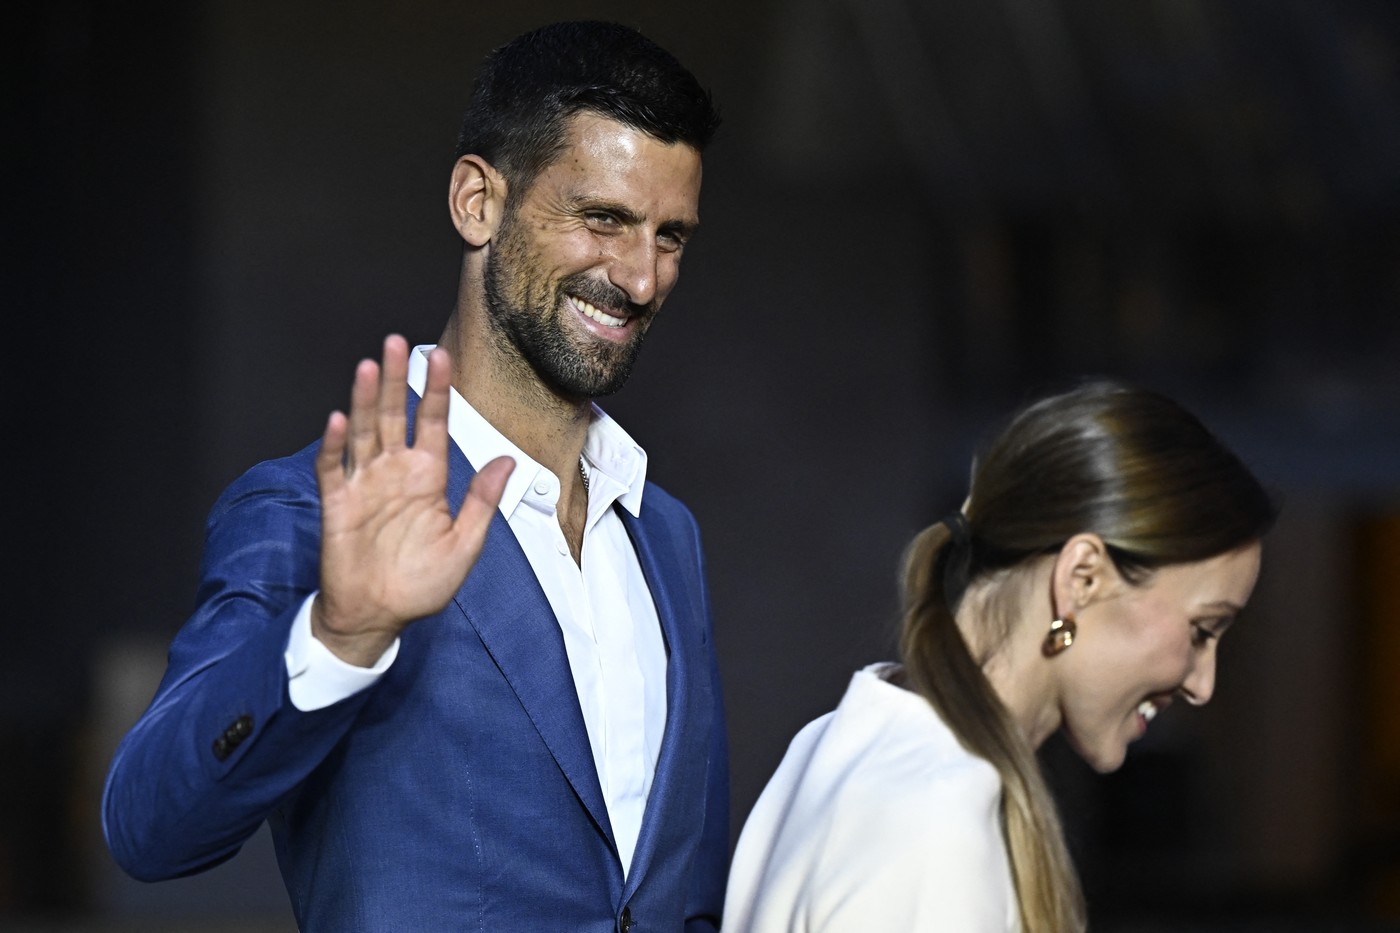 "Kakav šmeker": Novaku u Parizu prišla slavna glumica, a zbog onoga što joj je rekao fanovi ga još više vole